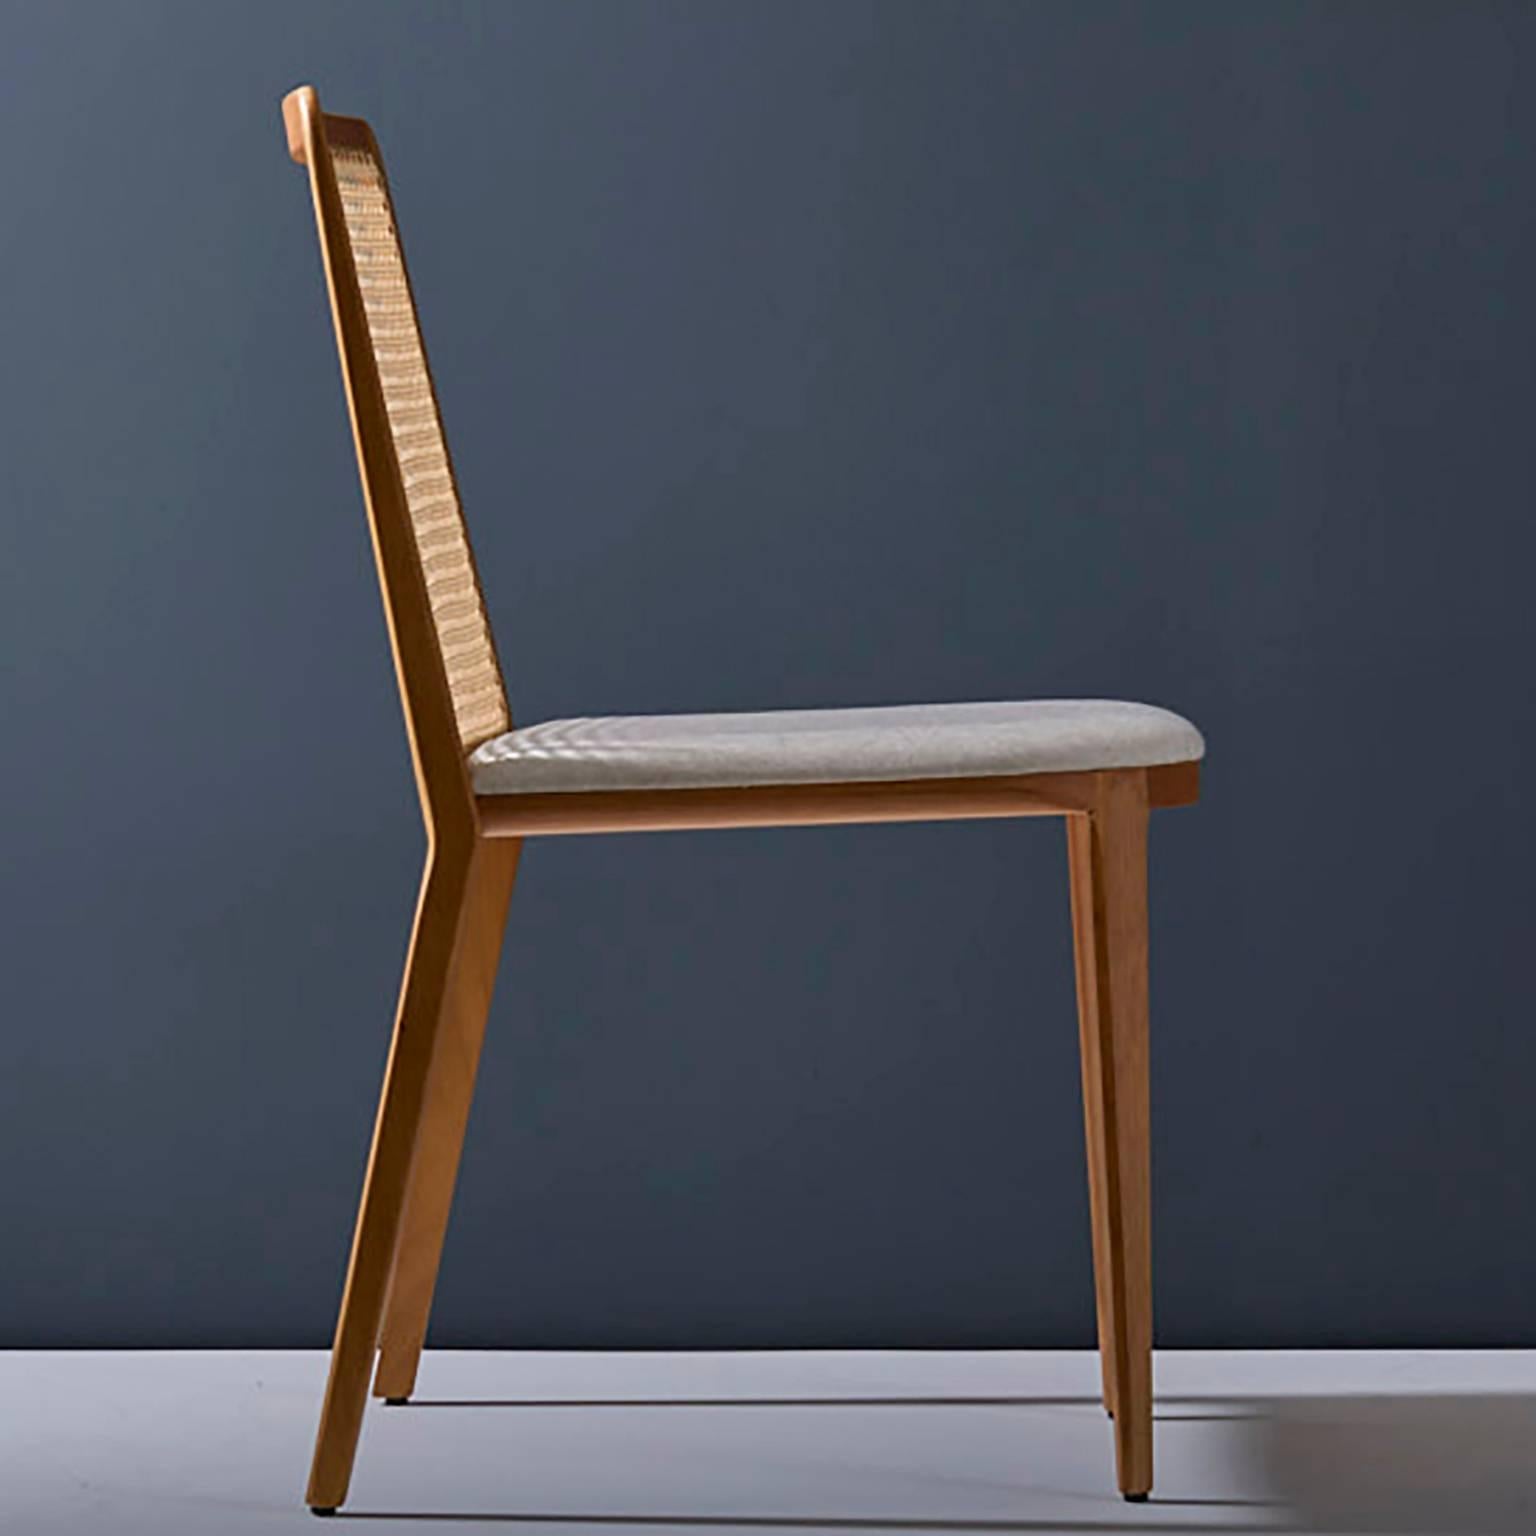 Chaise en bois massif de style minimaliste, siège en cuir, panneau arrière tapissé en vente 2